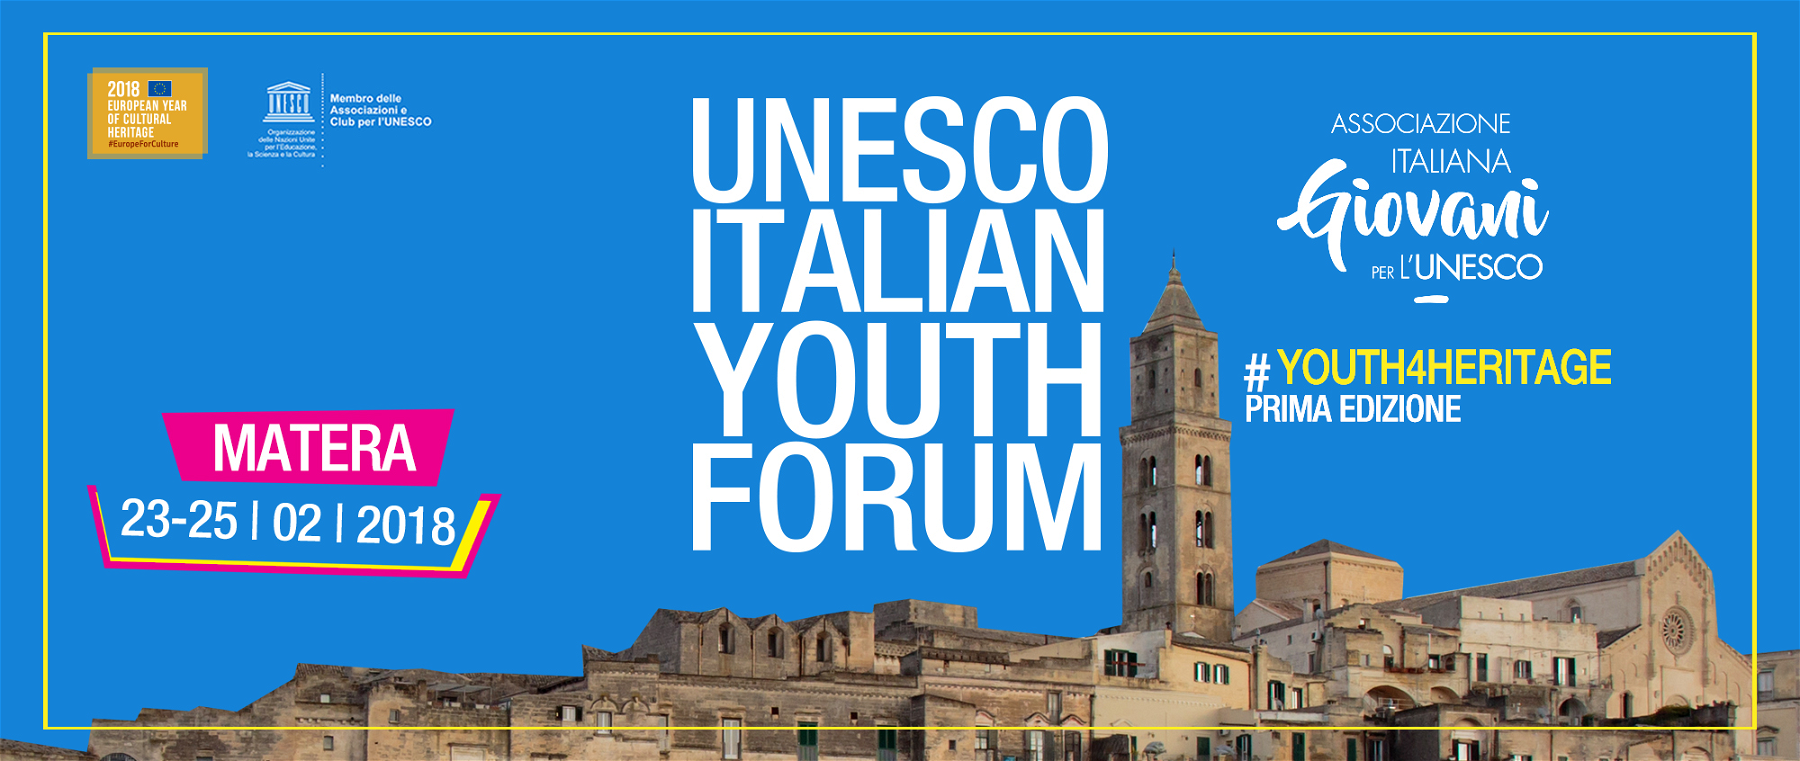 A Matera il primo forum dell'UNESCO per i giovani, dal 23 al 25 febbraio. Ecco come partecipare